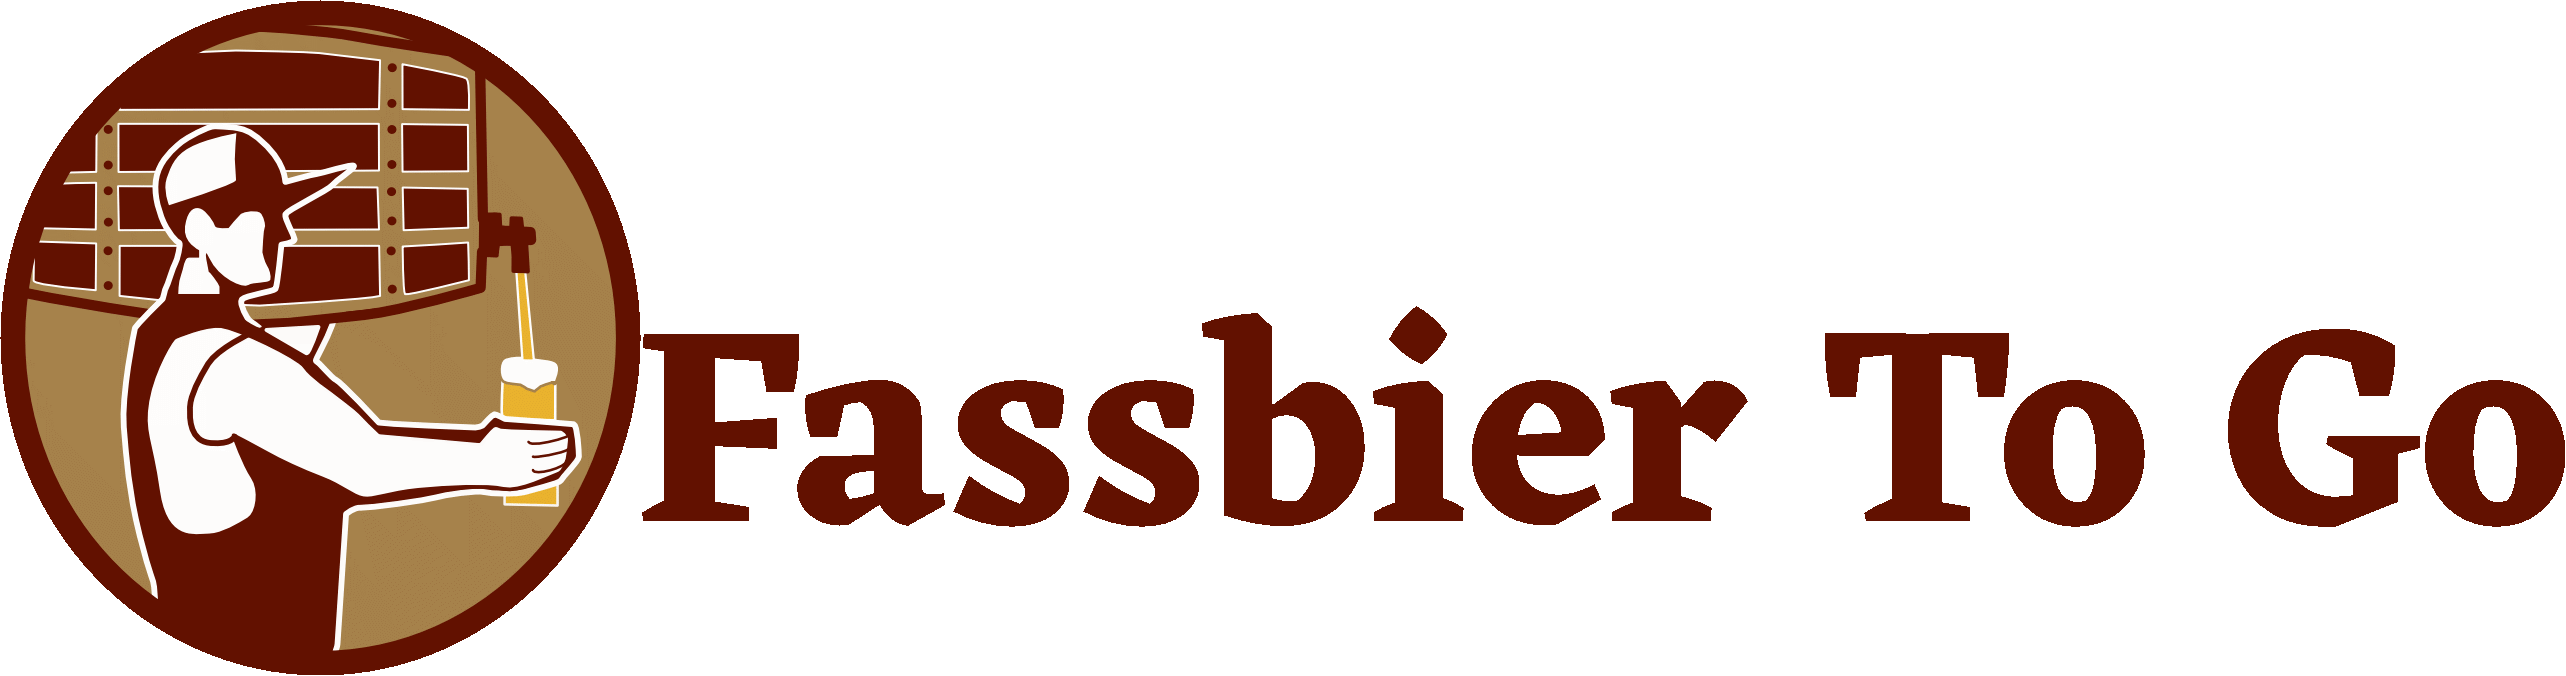 Fassbier To Go Logo